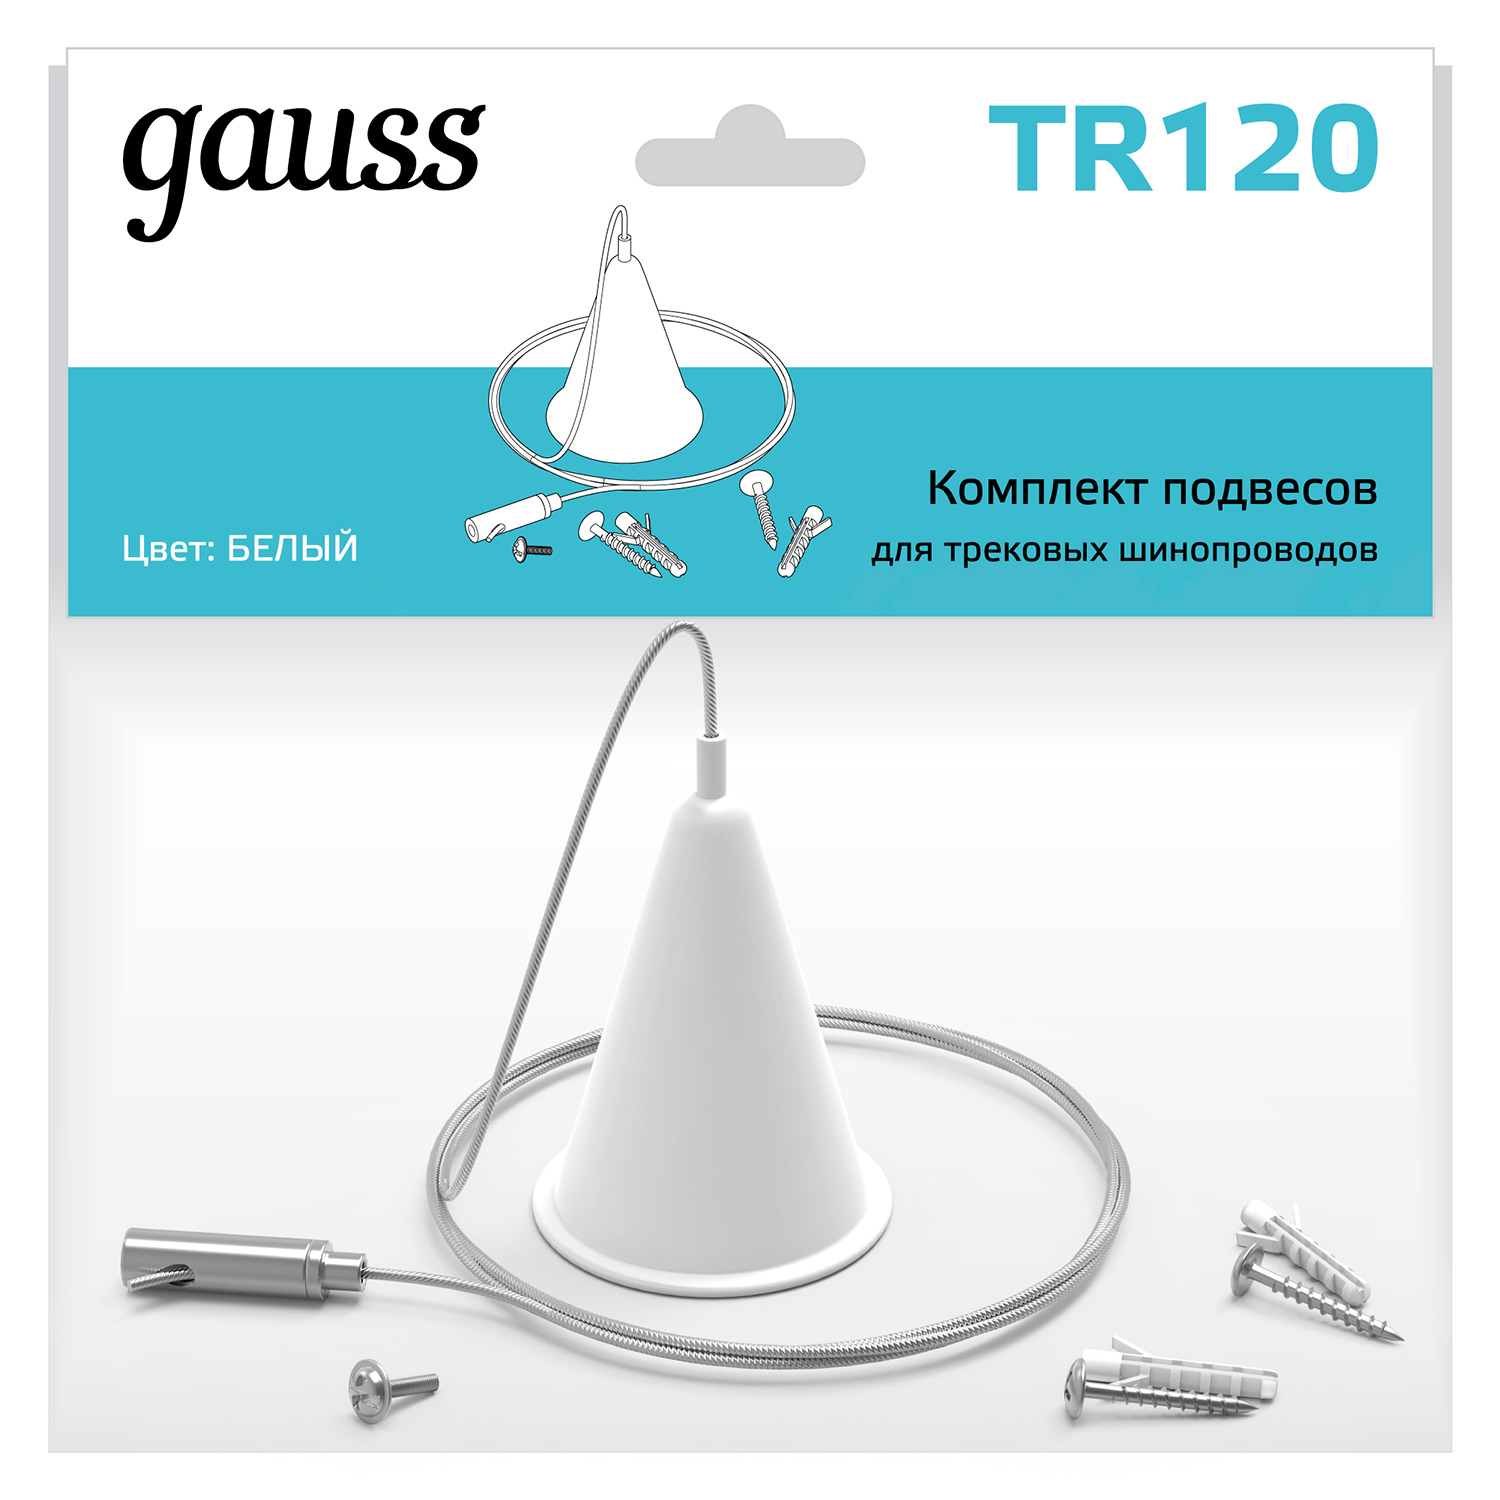 Комплект подвесов для трековых шинопроводов Gauss, цвет белый коннектор gauss для трековых шинопроводов гибкий i